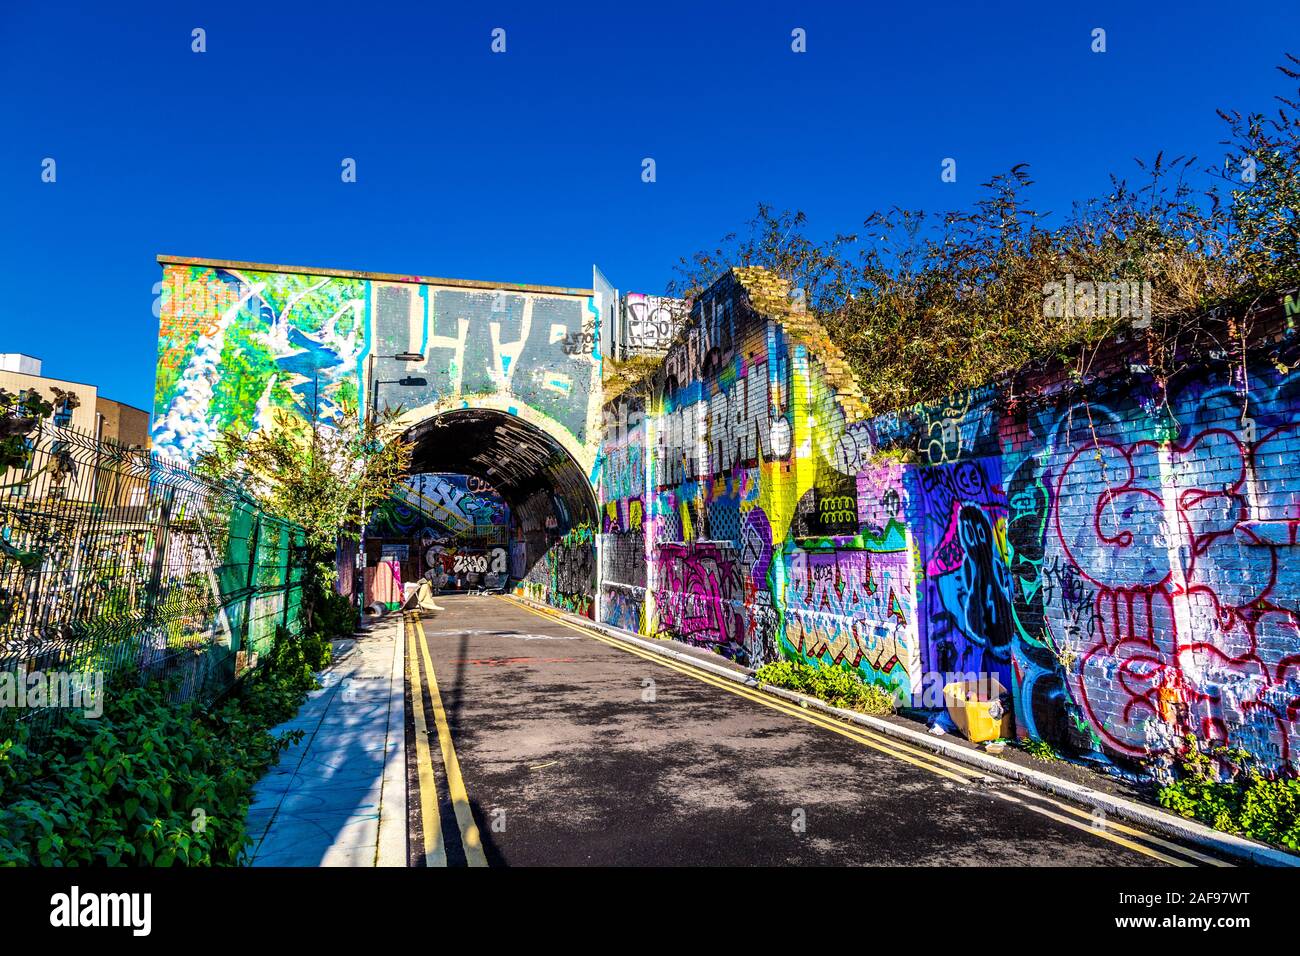 Pedley Straße Arch mit Mauerbildern bedeckt, Graffiti und Street Art, London, UK Stockfoto